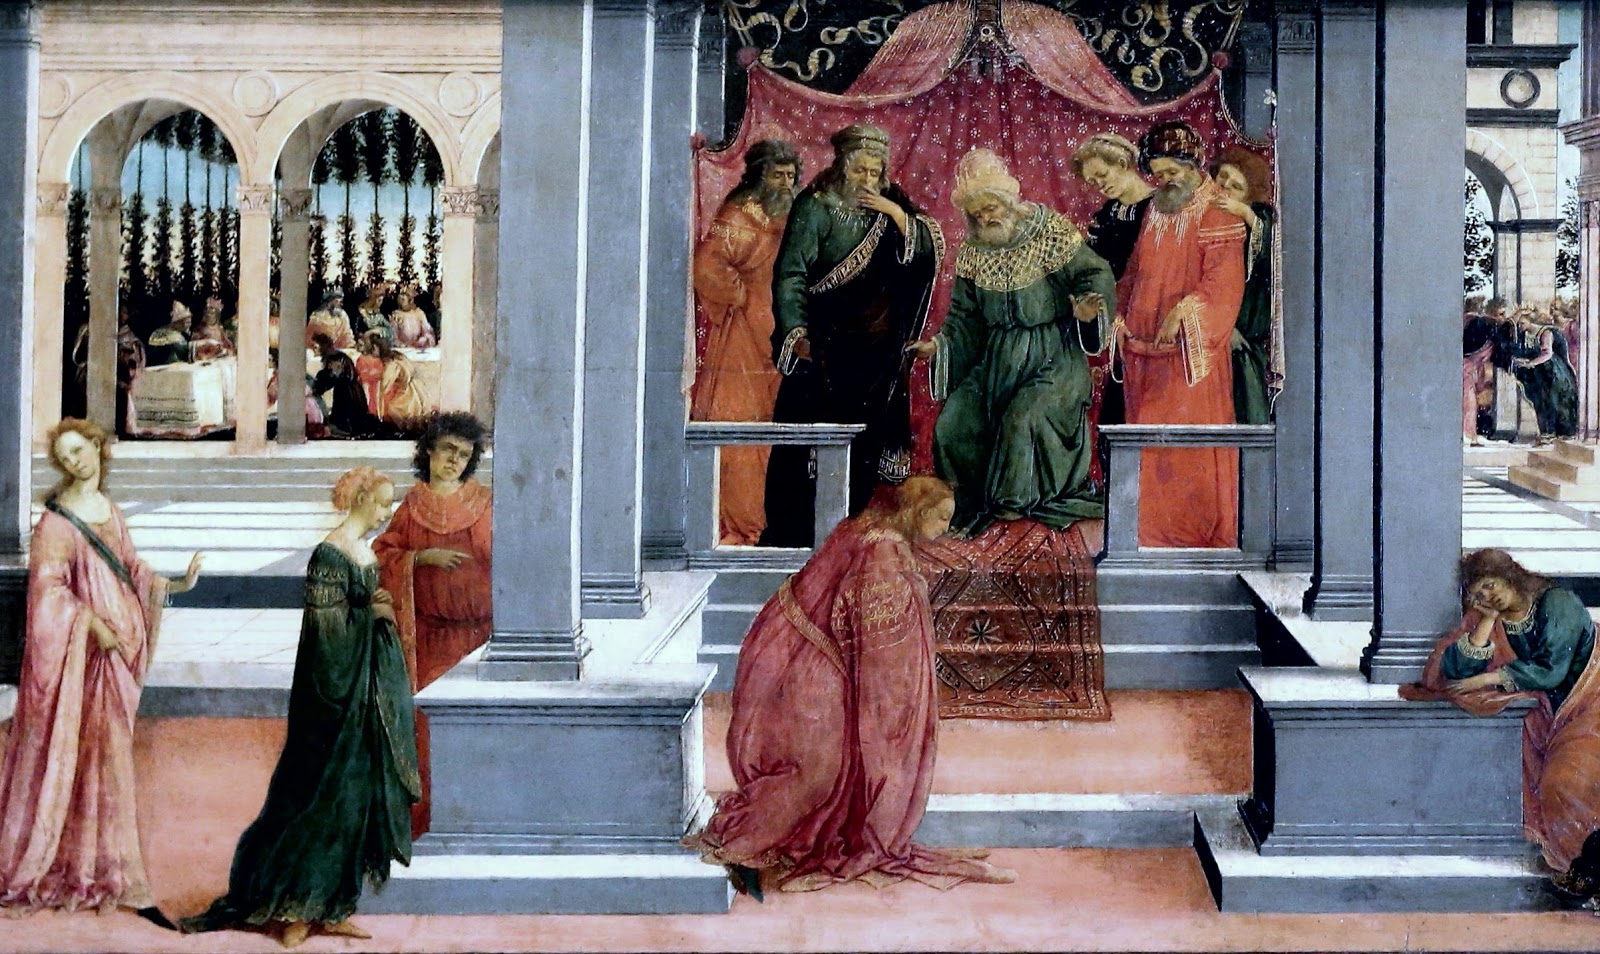 Filippino+Lippi-1457-1504 (9).jpg